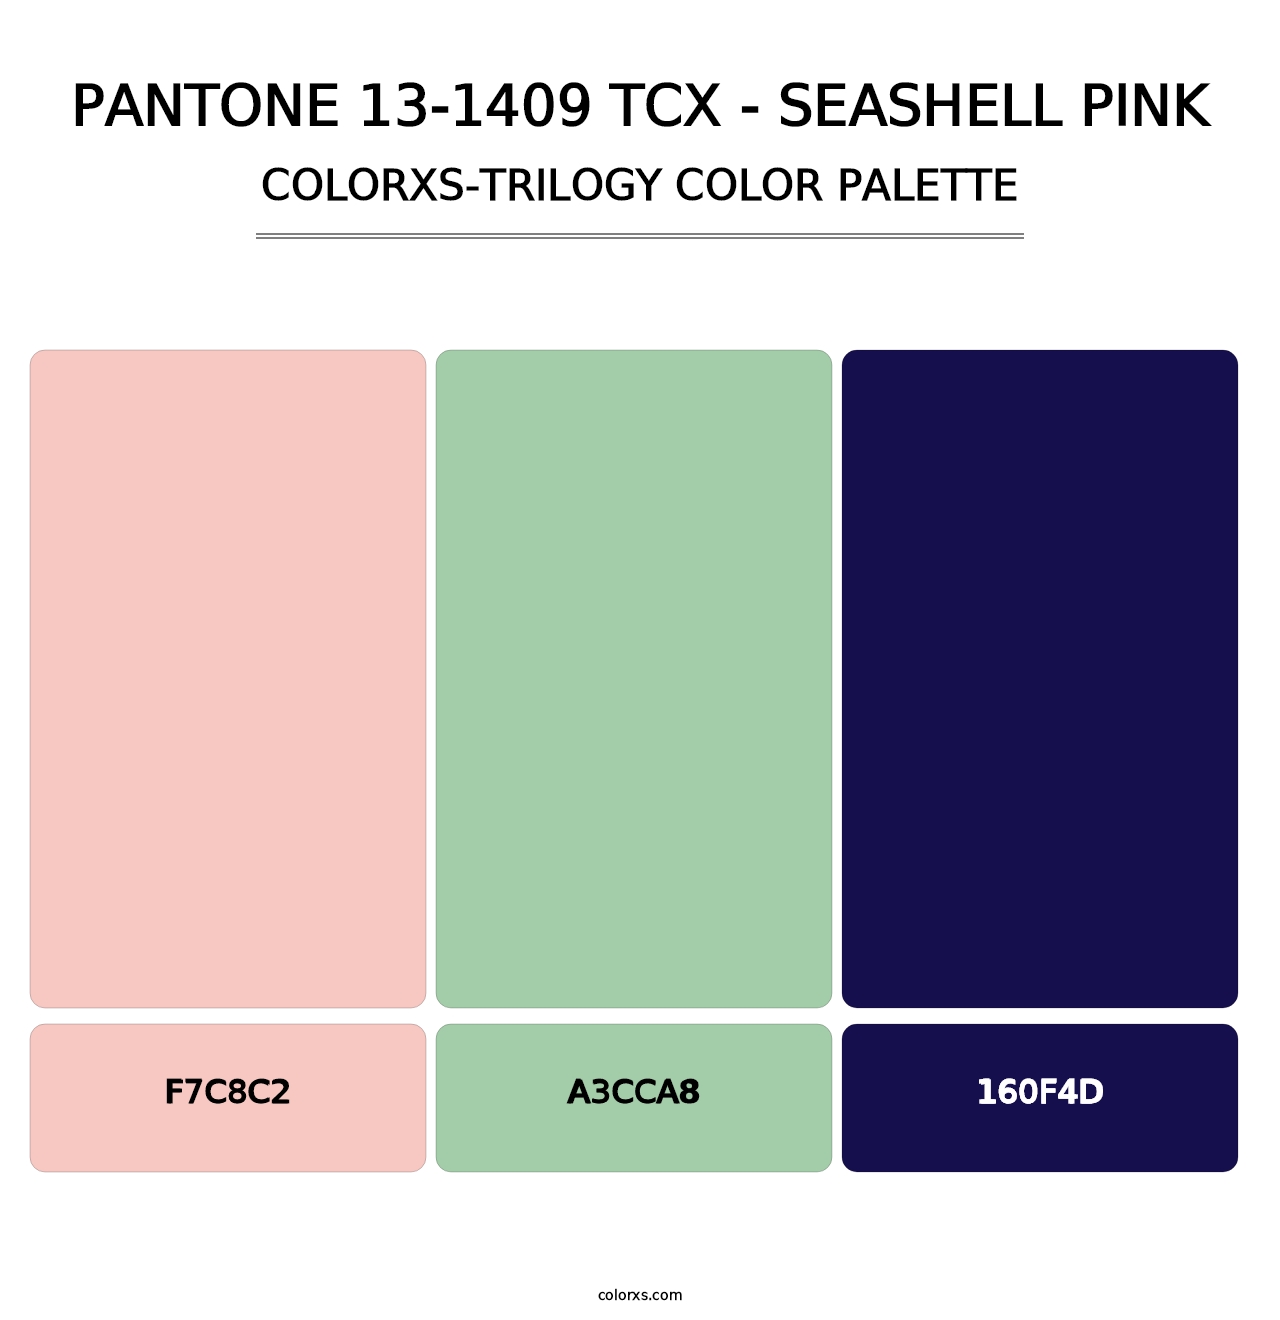 PANTONE 13-1409 TCX - Seashell Pink - Colorxs Trilogy Palette